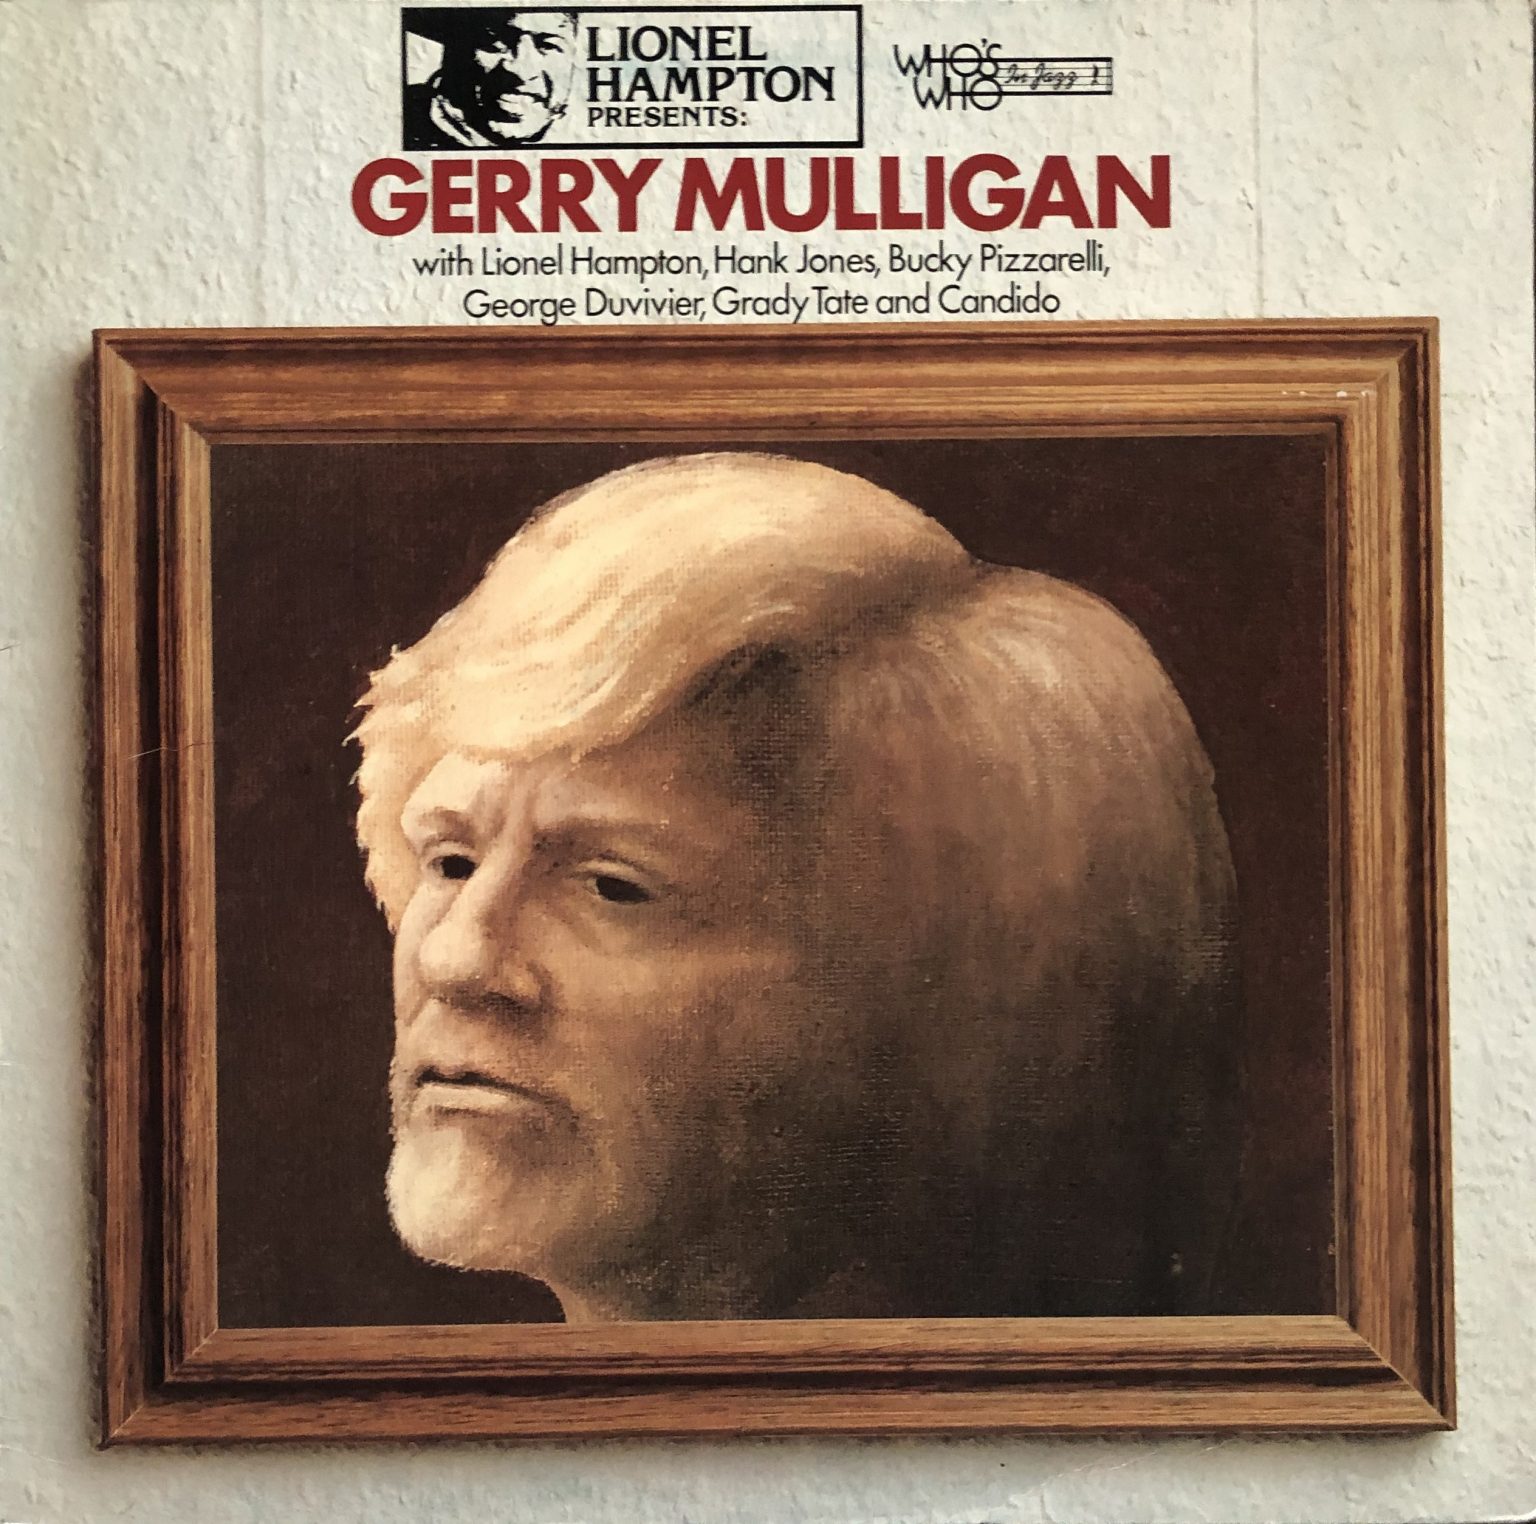 Gerry Mulligan – Lionel Hampton Presents: Gerry Mulligan LP